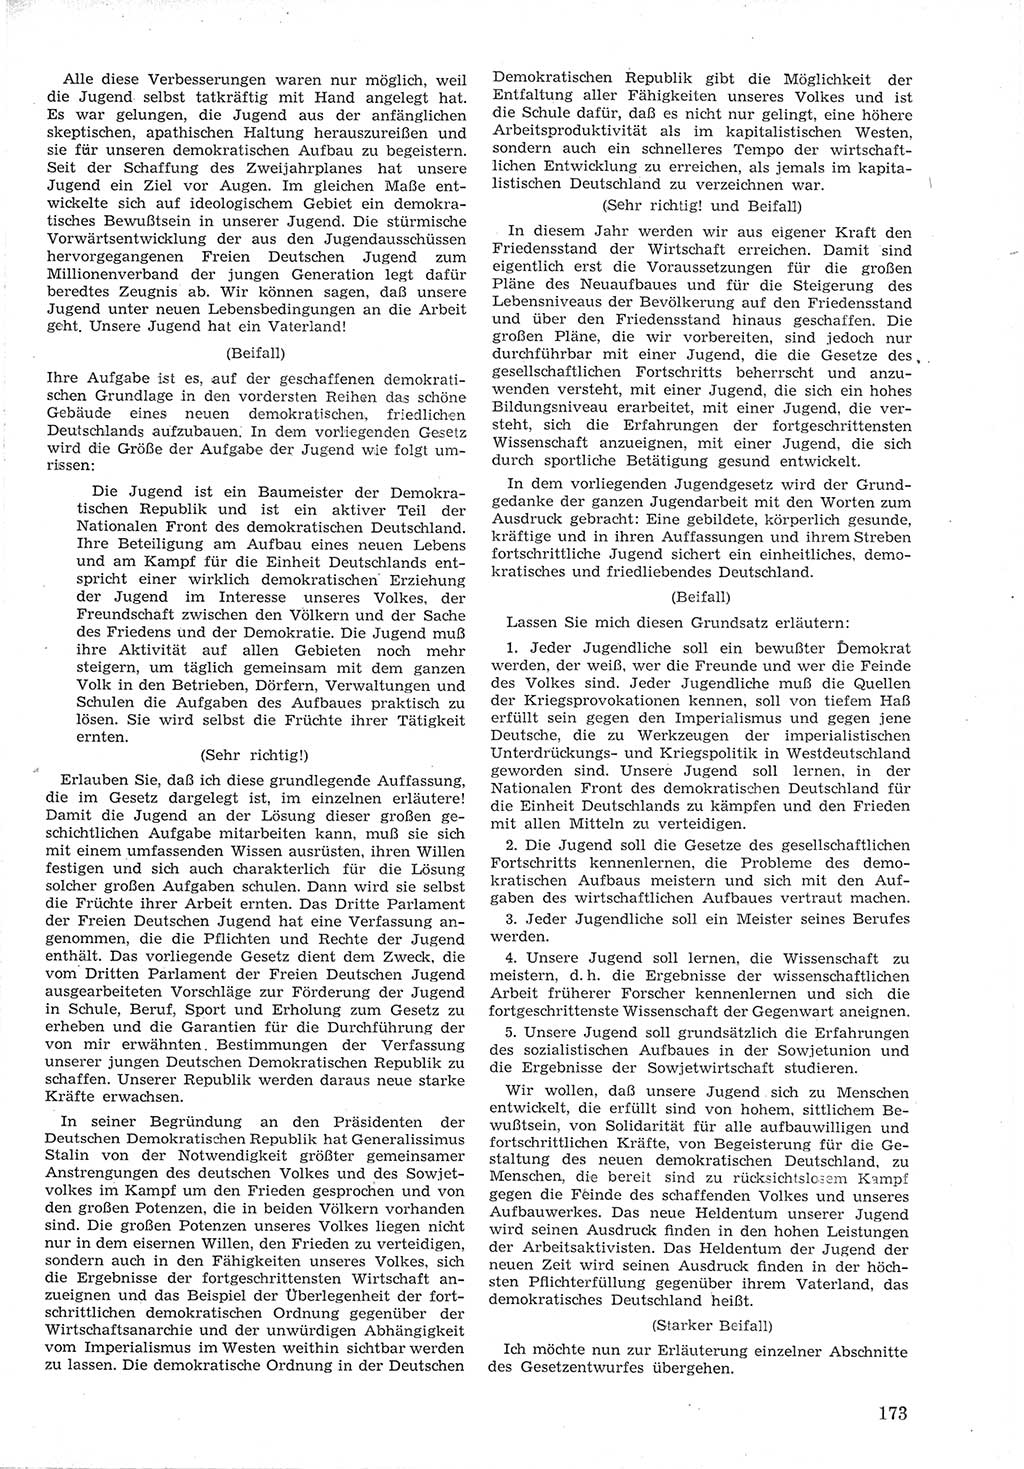 Provisorische Volkskammer (VK) der Deutschen Demokratischen Republik (DDR) 1949-1950, Dokument 185 (Prov. VK DDR 1949-1950, Dok. 185)